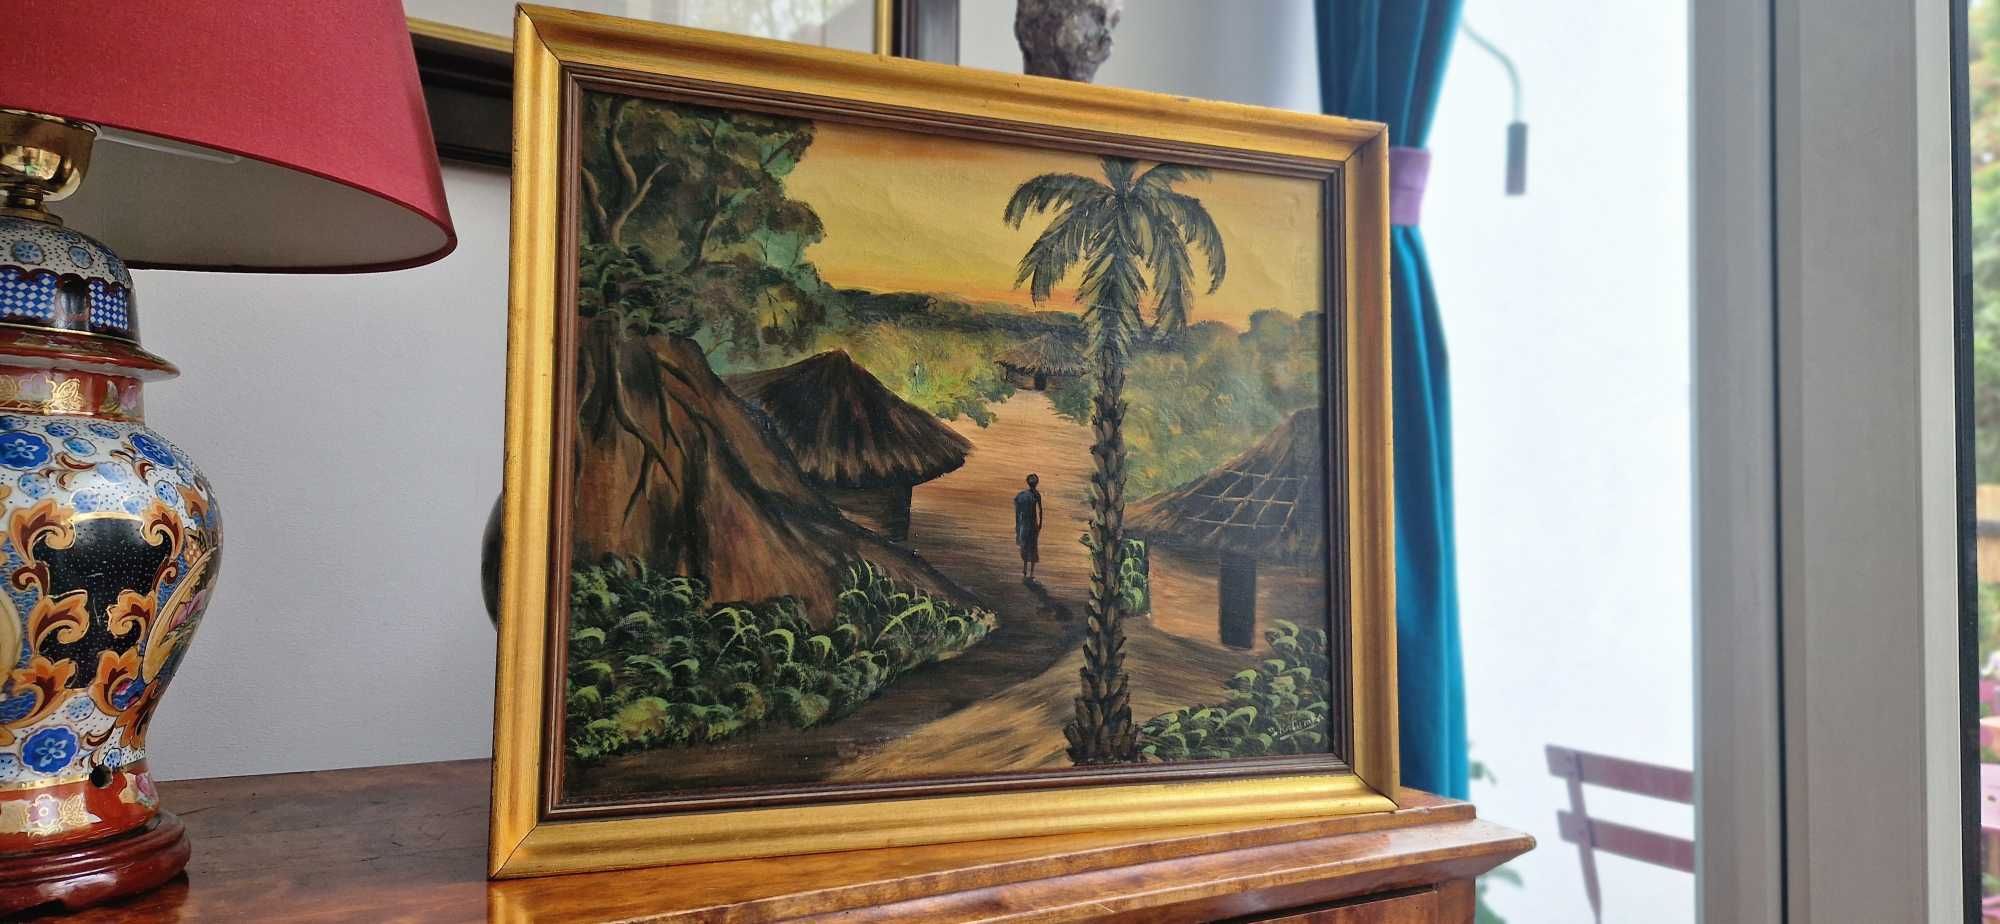 Obraz ojej pejzaż tropikalny Afryka palmy sygnowany B. Katumba dekor